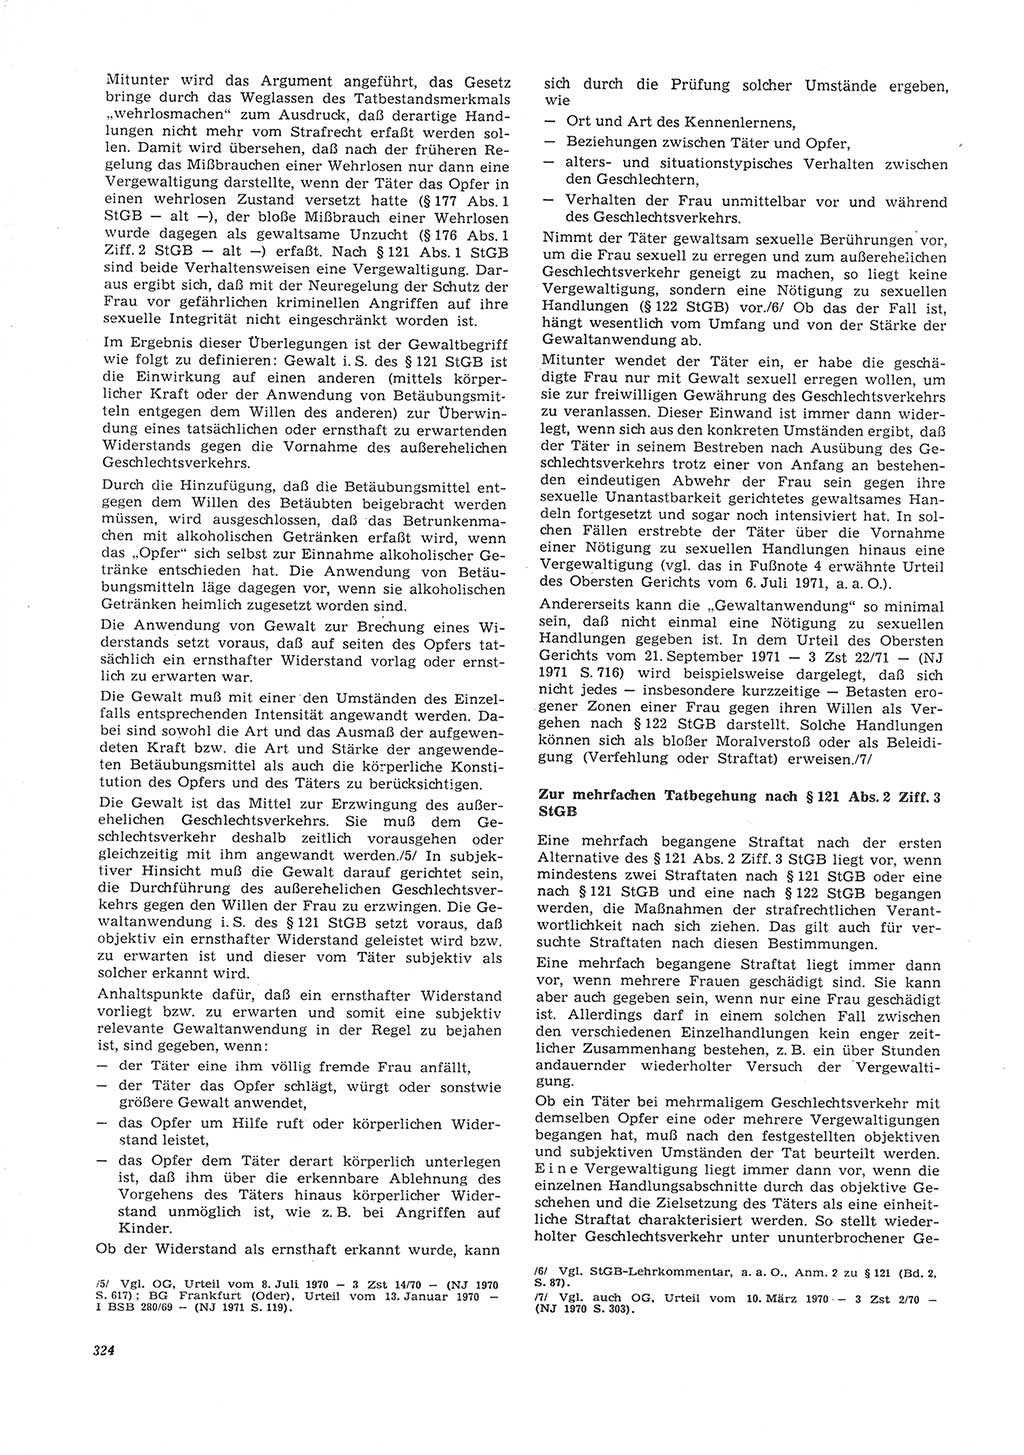 Neue Justiz (NJ), Zeitschrift für Recht und Rechtswissenschaft [Deutsche Demokratische Republik (DDR)], 26. Jahrgang 1972, Seite 324 (NJ DDR 1972, S. 324)